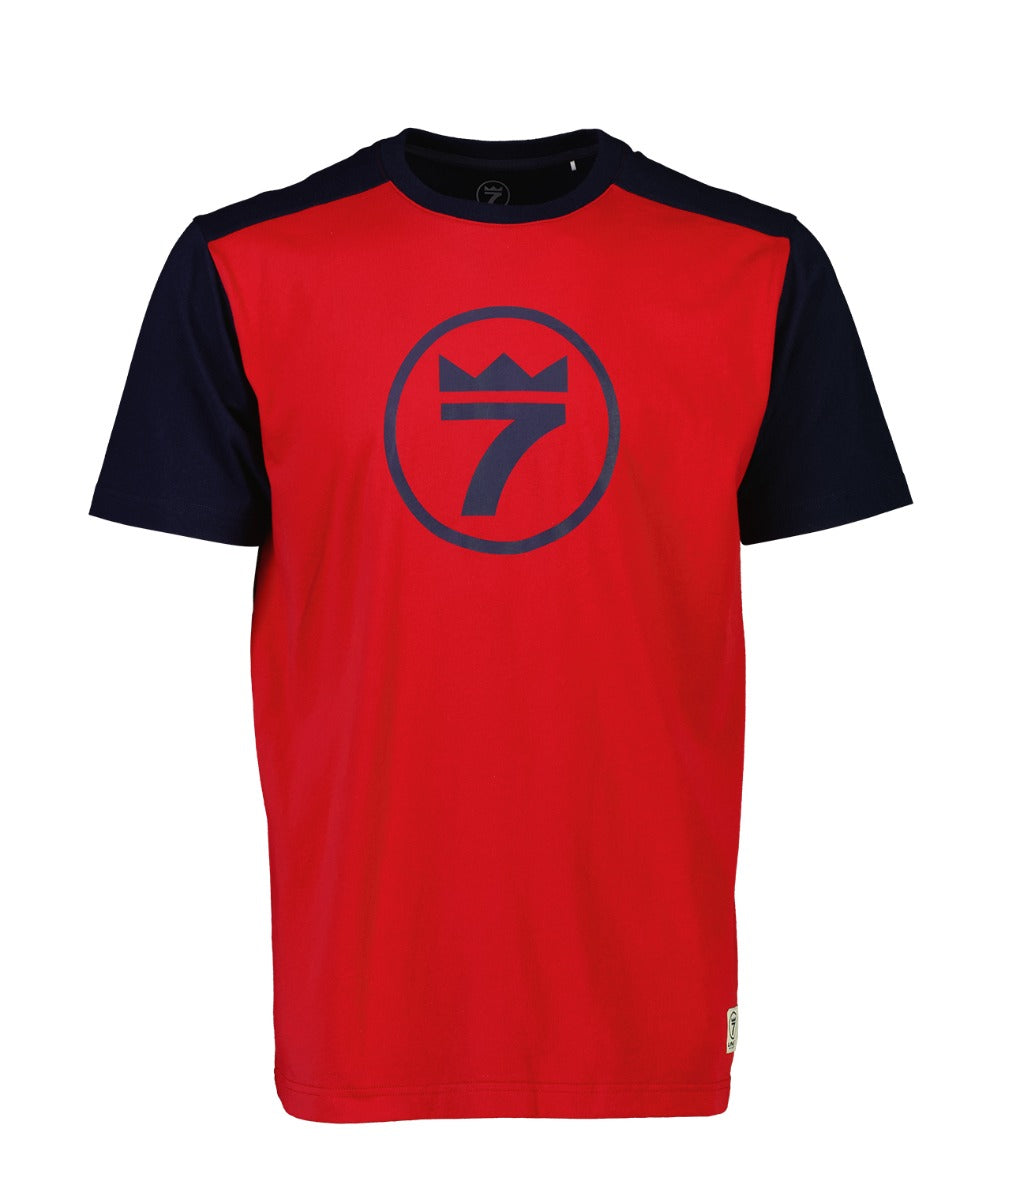 line-7-men-s-lucky-7-t-shirt.jpg